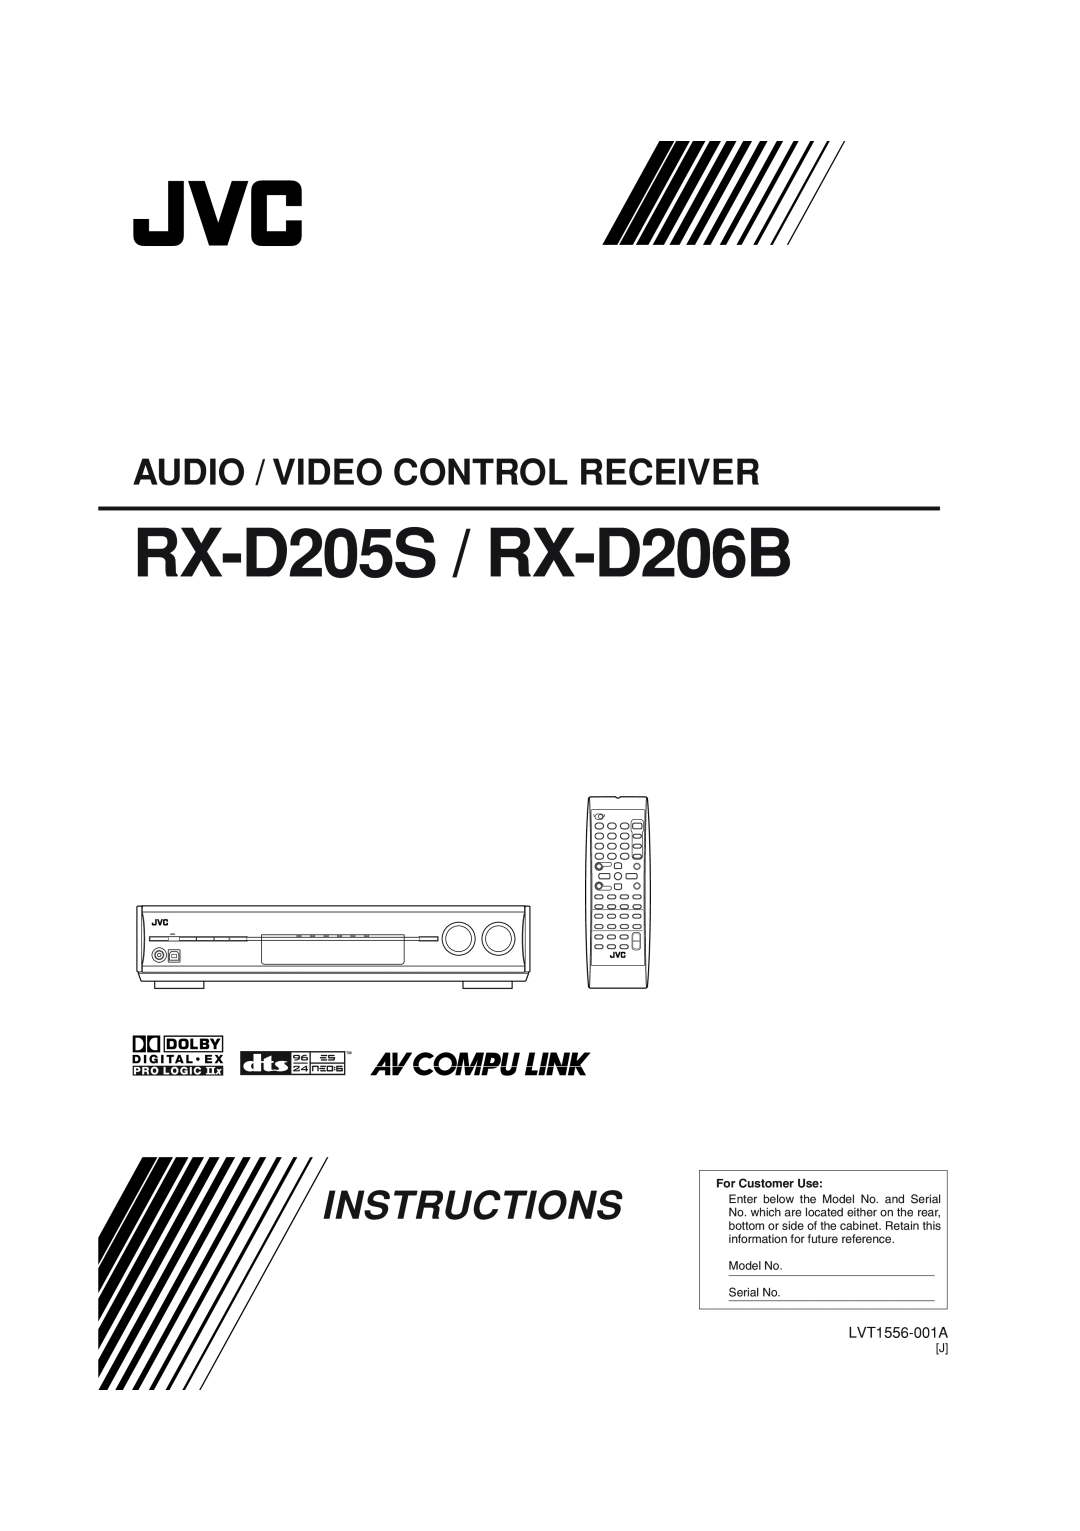 JVC manual RX-D205S / RX-D206B, Instructions, Audio / Video Control Receiver, LVT1556-001A 